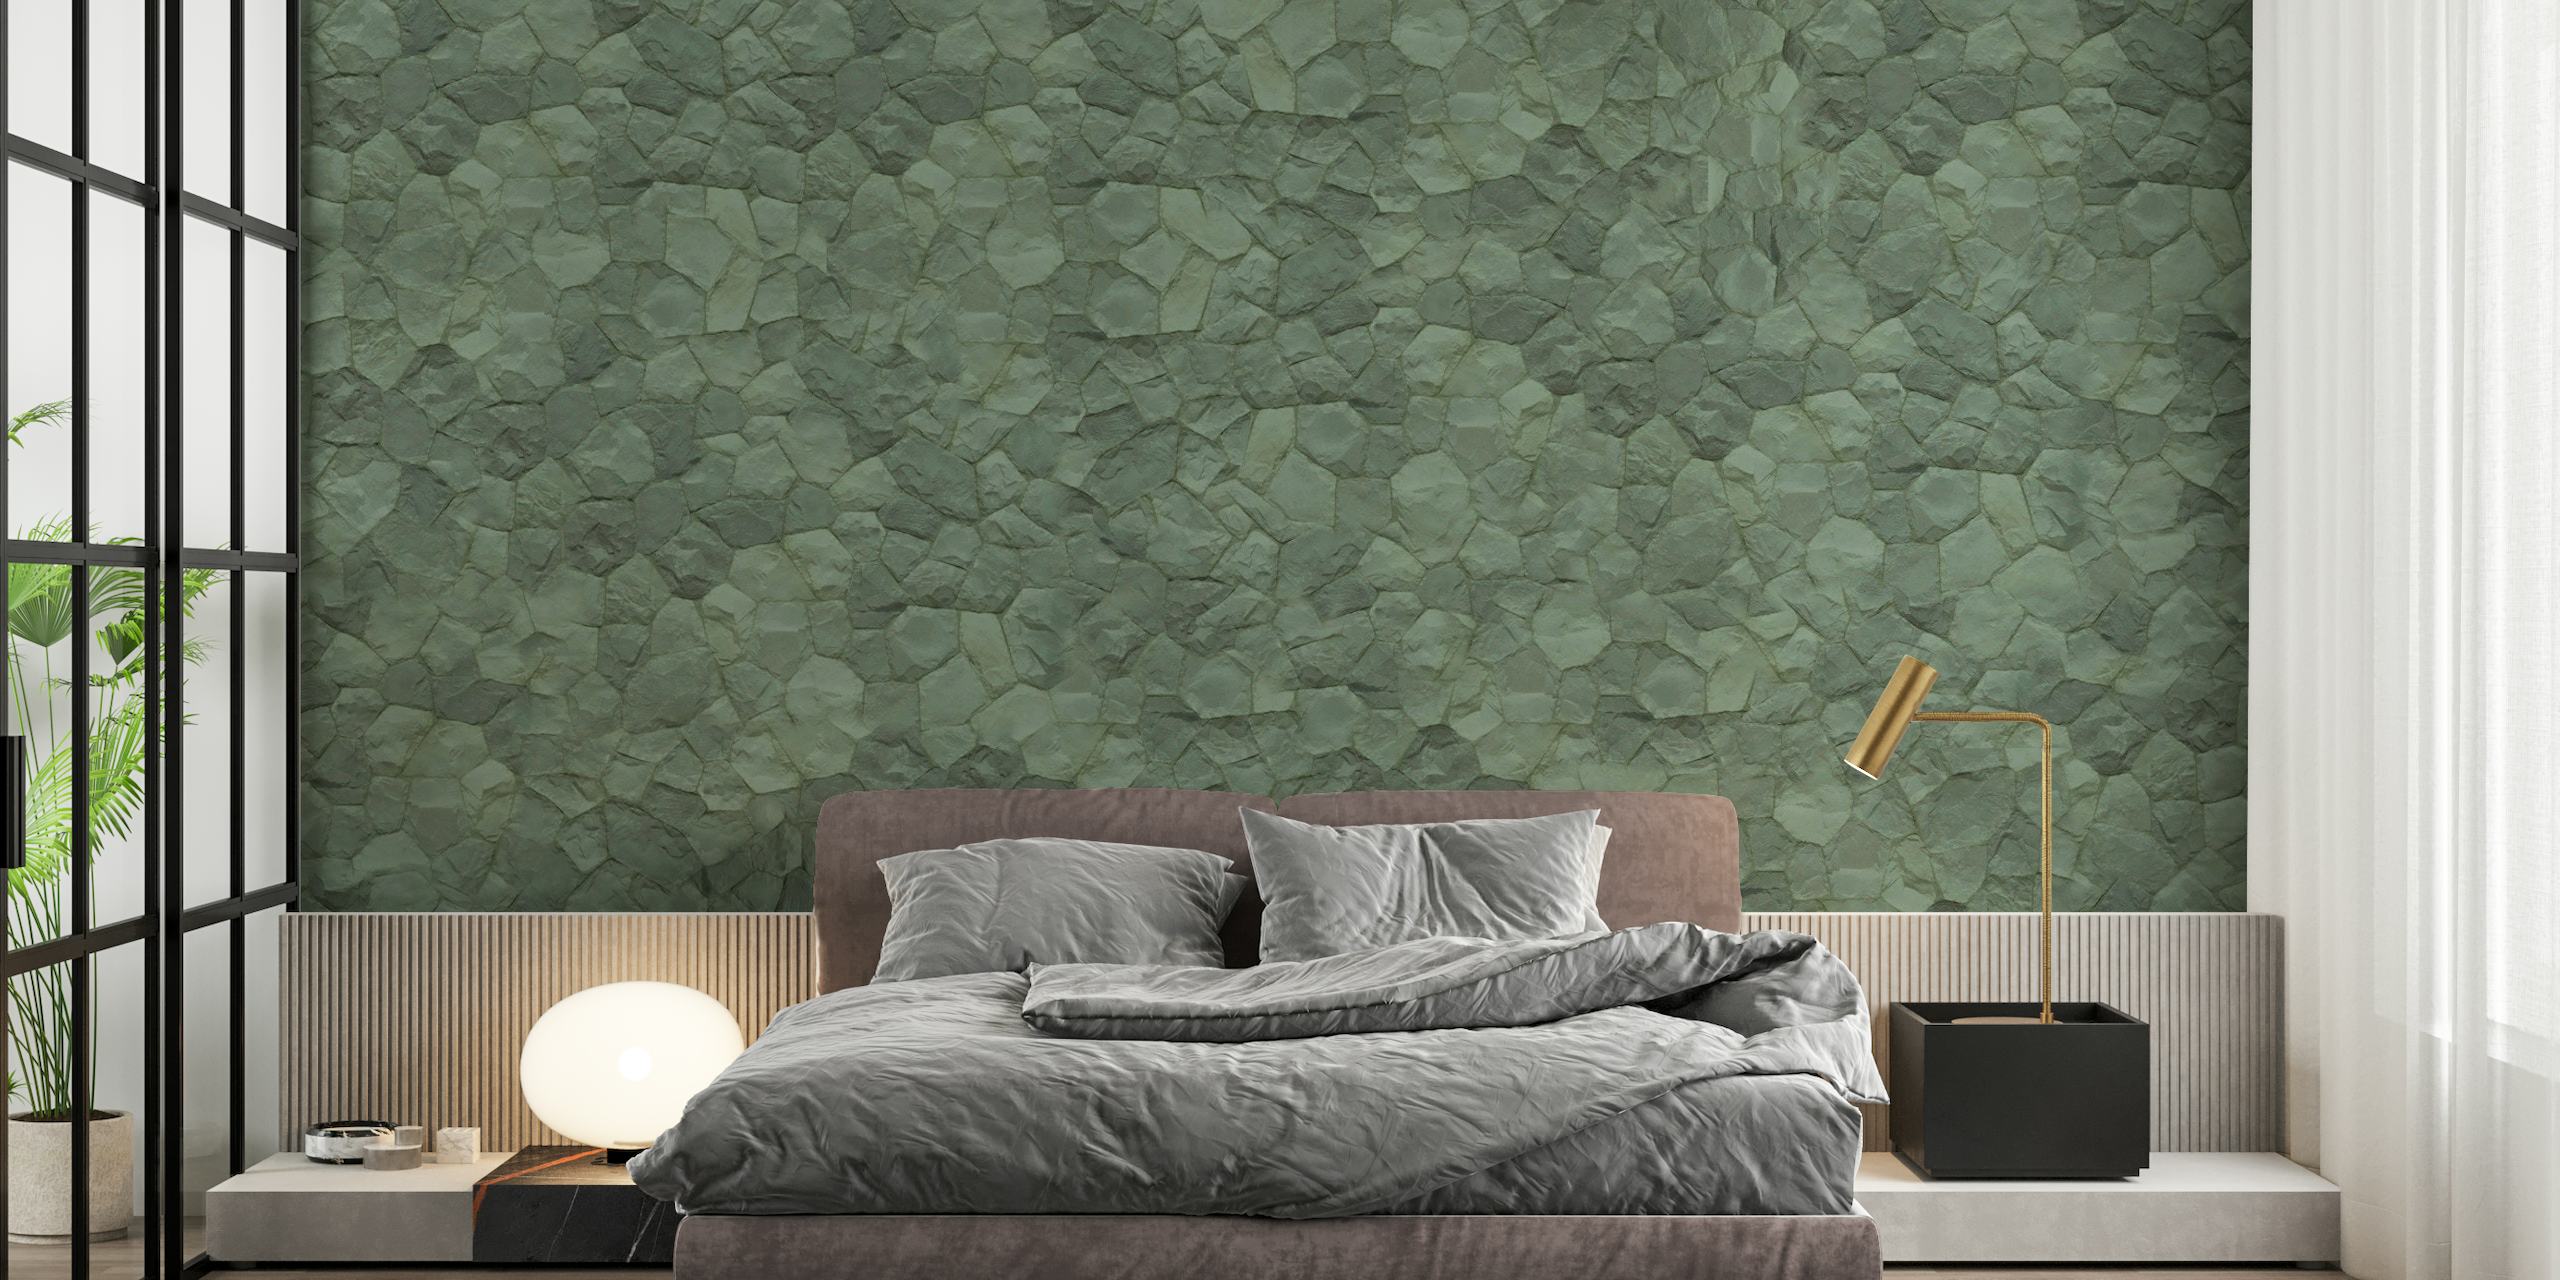 Fotomural vinílico de parede com textura de pedra verde para um ambiente interior sereno